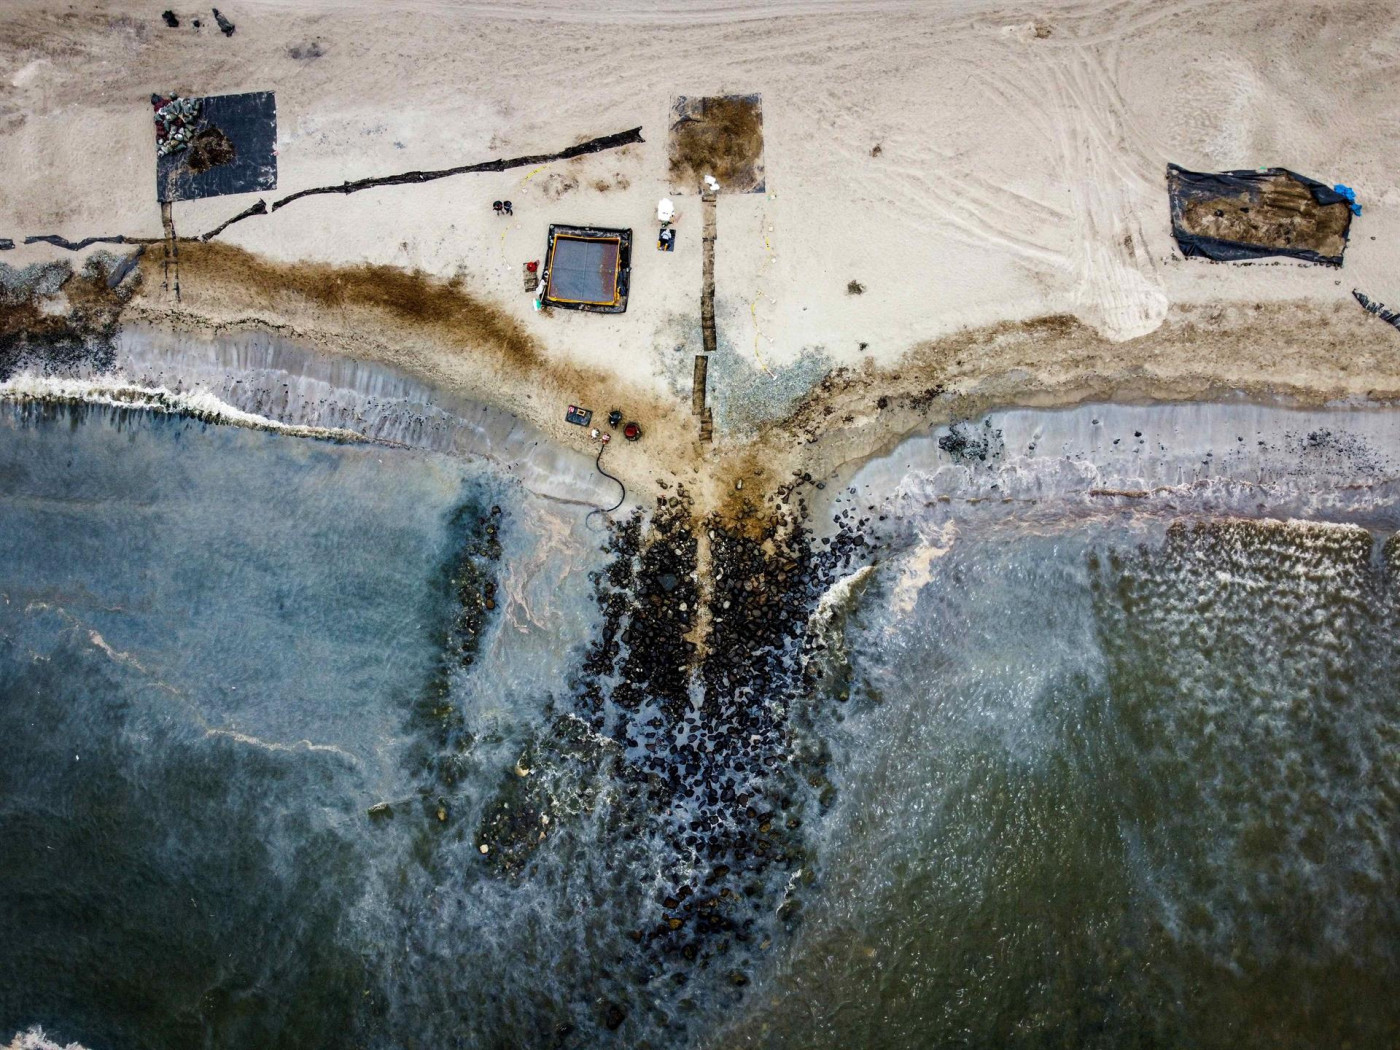 derramamento de petróleo no Peru